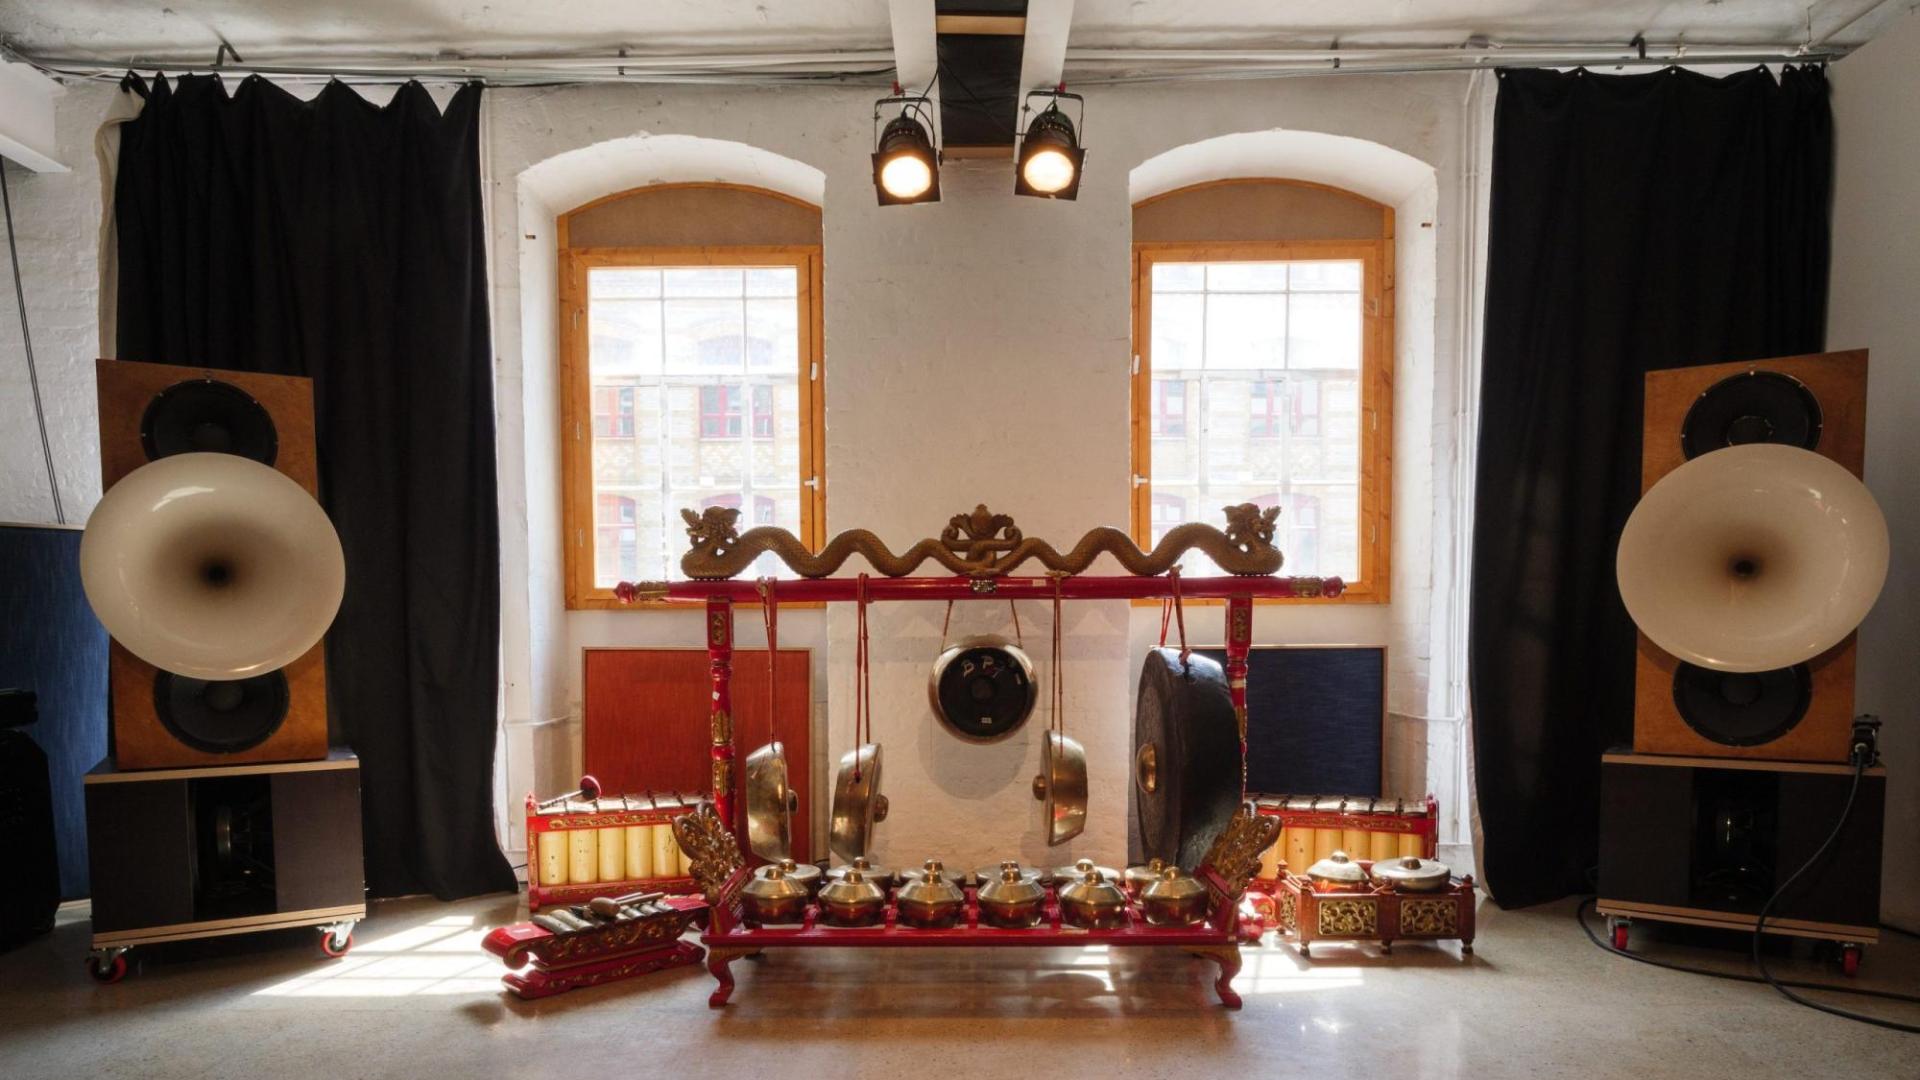 Ausgewählte Instrumente des javanischen Gamelan-Ensembles, das im Rumah Budaya Indonesia - Haus der Indonesischen Kulturen untergebracht sind